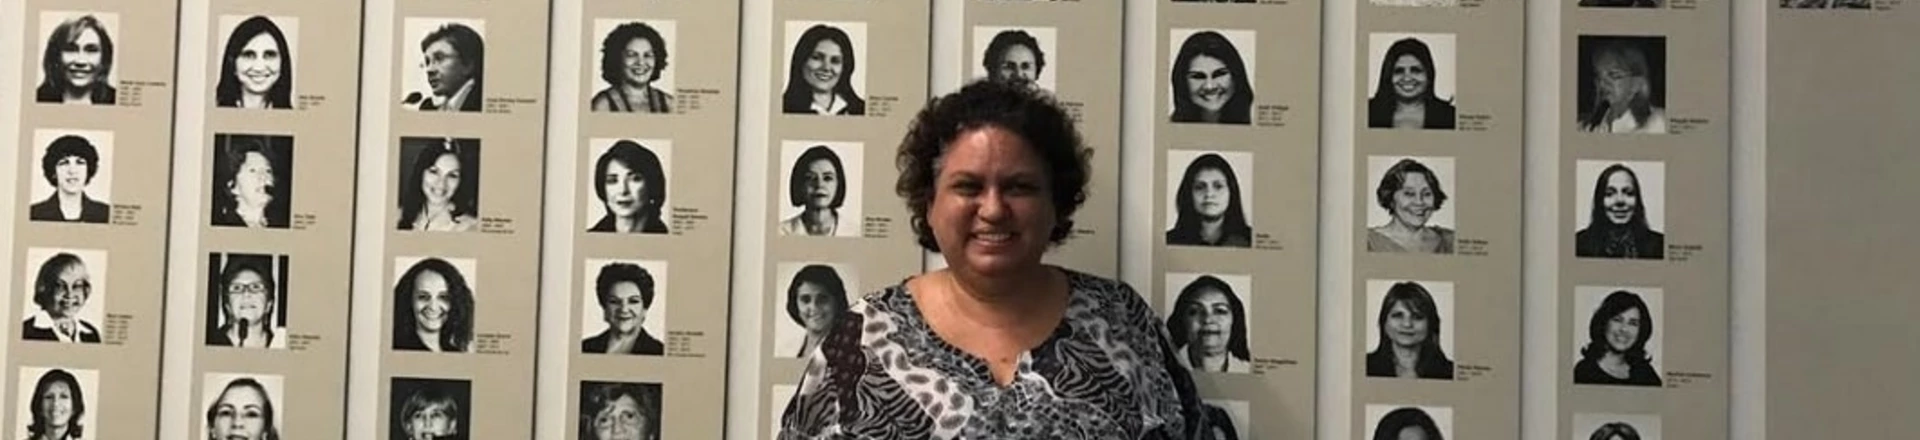 Lola Aronovich em frente a um mural com fotos de deputadas mulheres no Congresso Nacional, em Brasília.